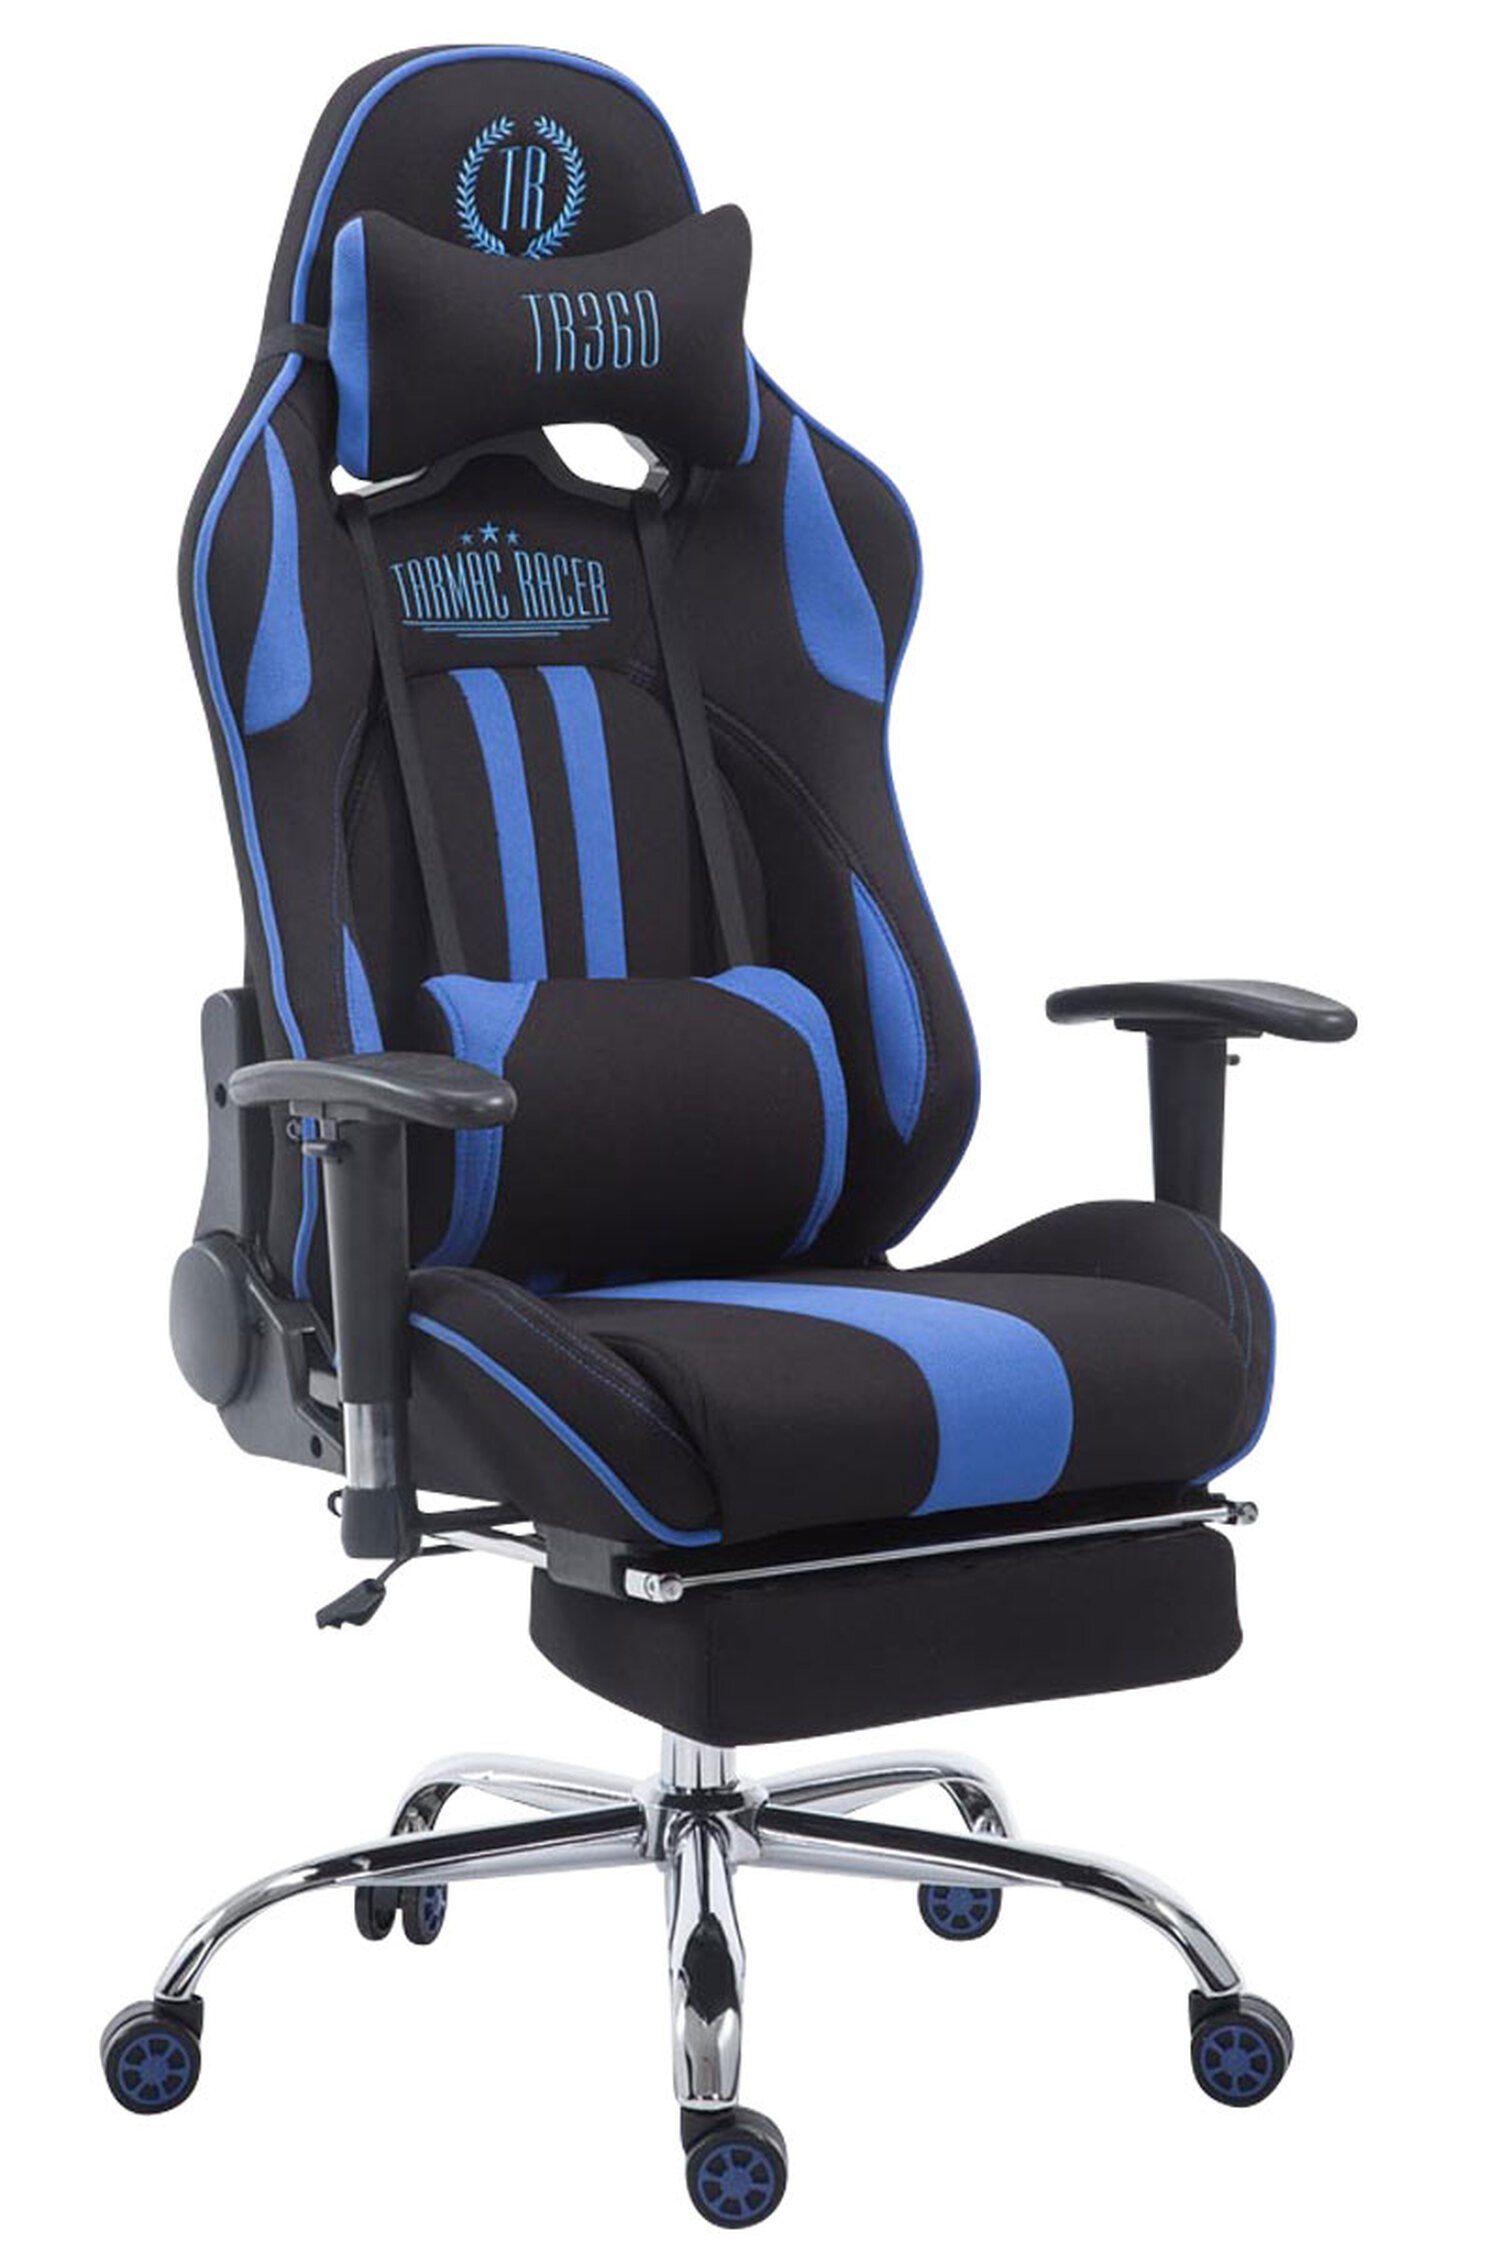 TPFLiving Gaming-Stuhl Limitless-2 mit bequemer Rückenlehne - höhenverstellbar - 360° drehbar (Schreibtischstuhl, Drehstuhl, Gamingstuhl, Racingstuhl, Chefsessel), Gestell: Metall chrom - Sitzfläche: Stoff schwarz/blau